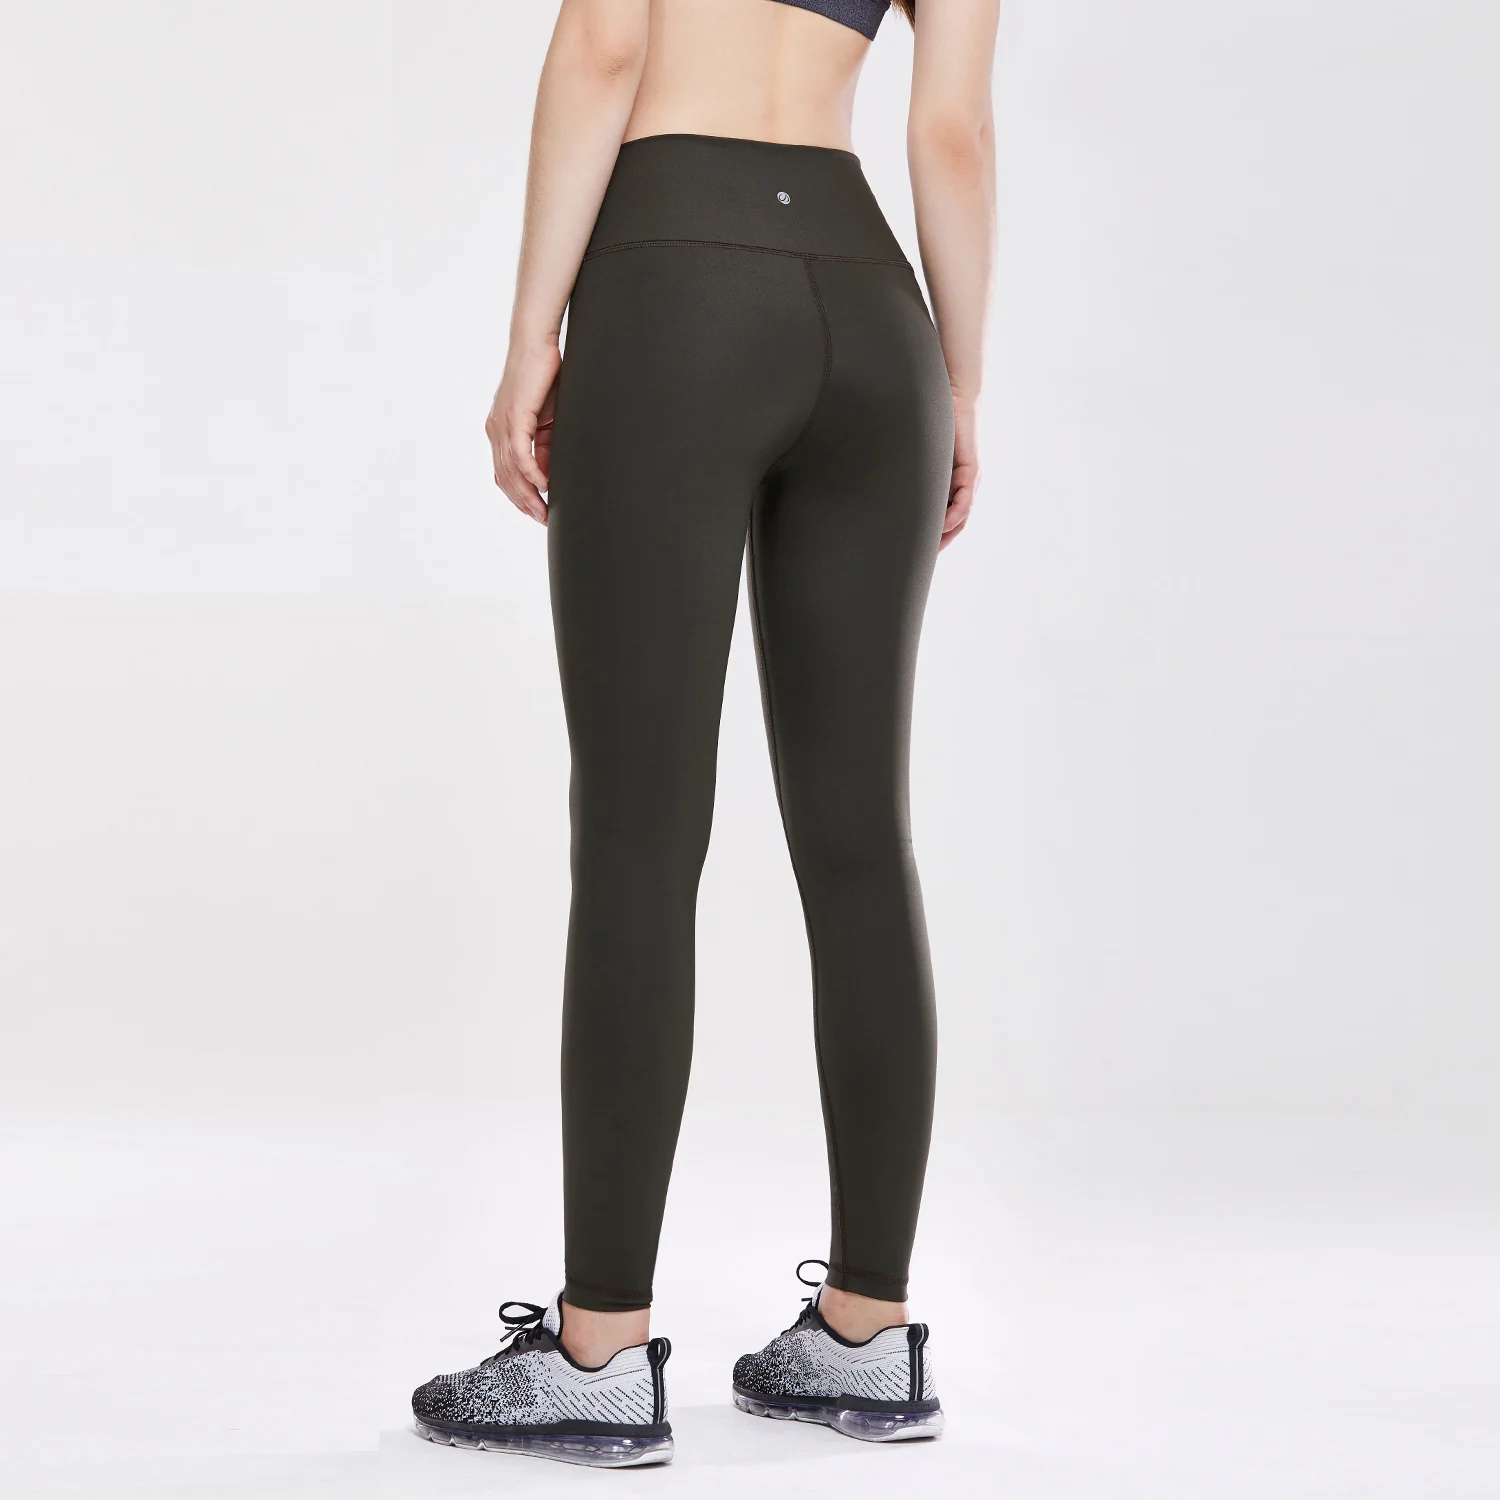 CRZ женские леггинсы для фитнеса тренировок, эластичные штаны с ультра высокой талией, спортивные Леггинсы для йоги - Цвет: Olive Green02